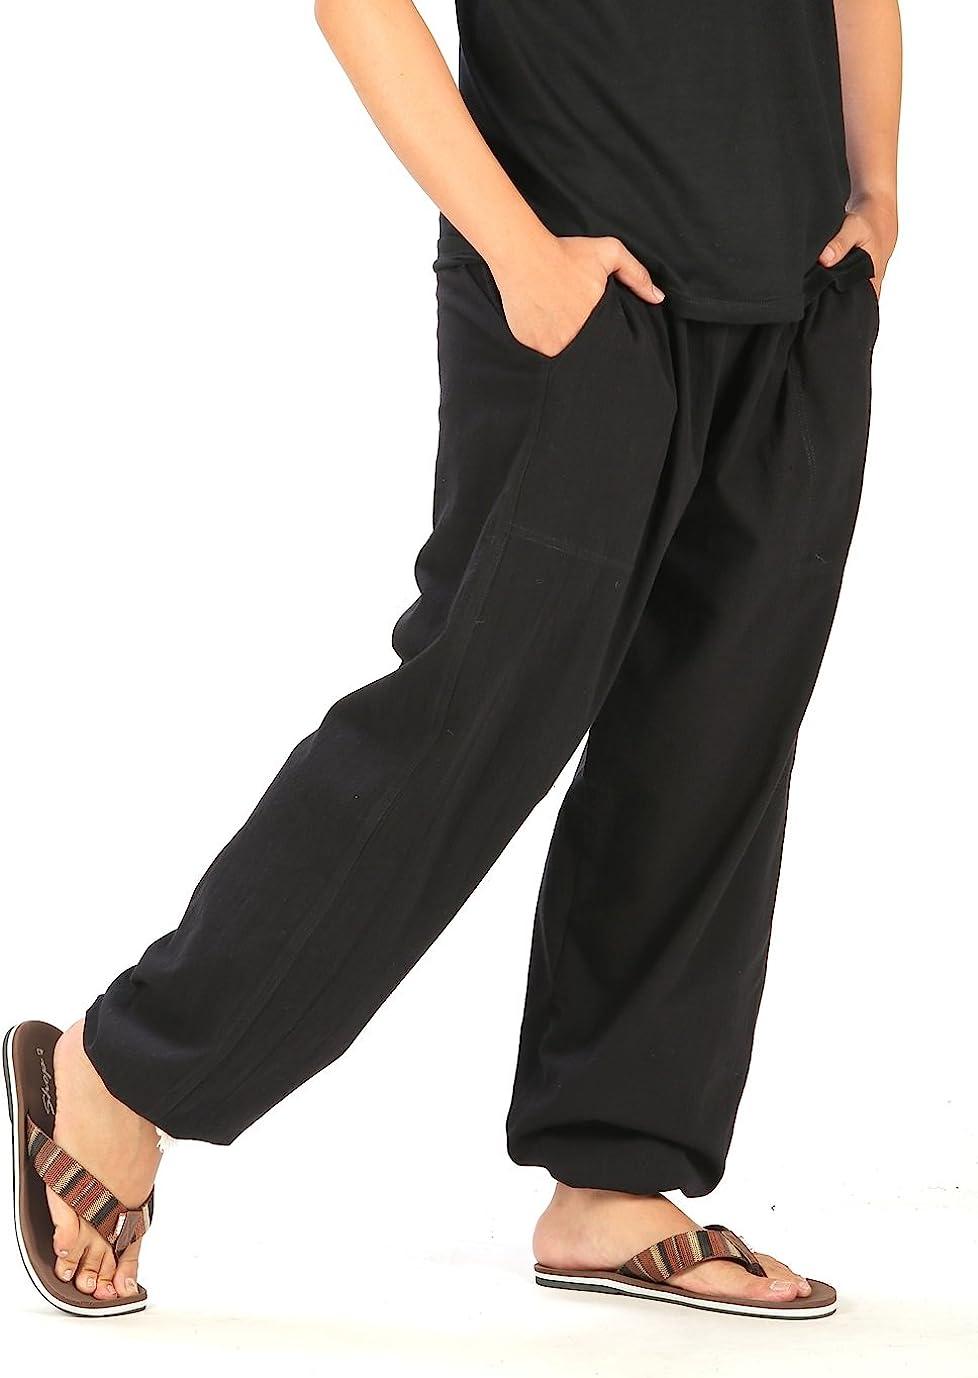 Unisex Hippie Mens Pants Size M, Comfortable Clothes, Lounge Wear